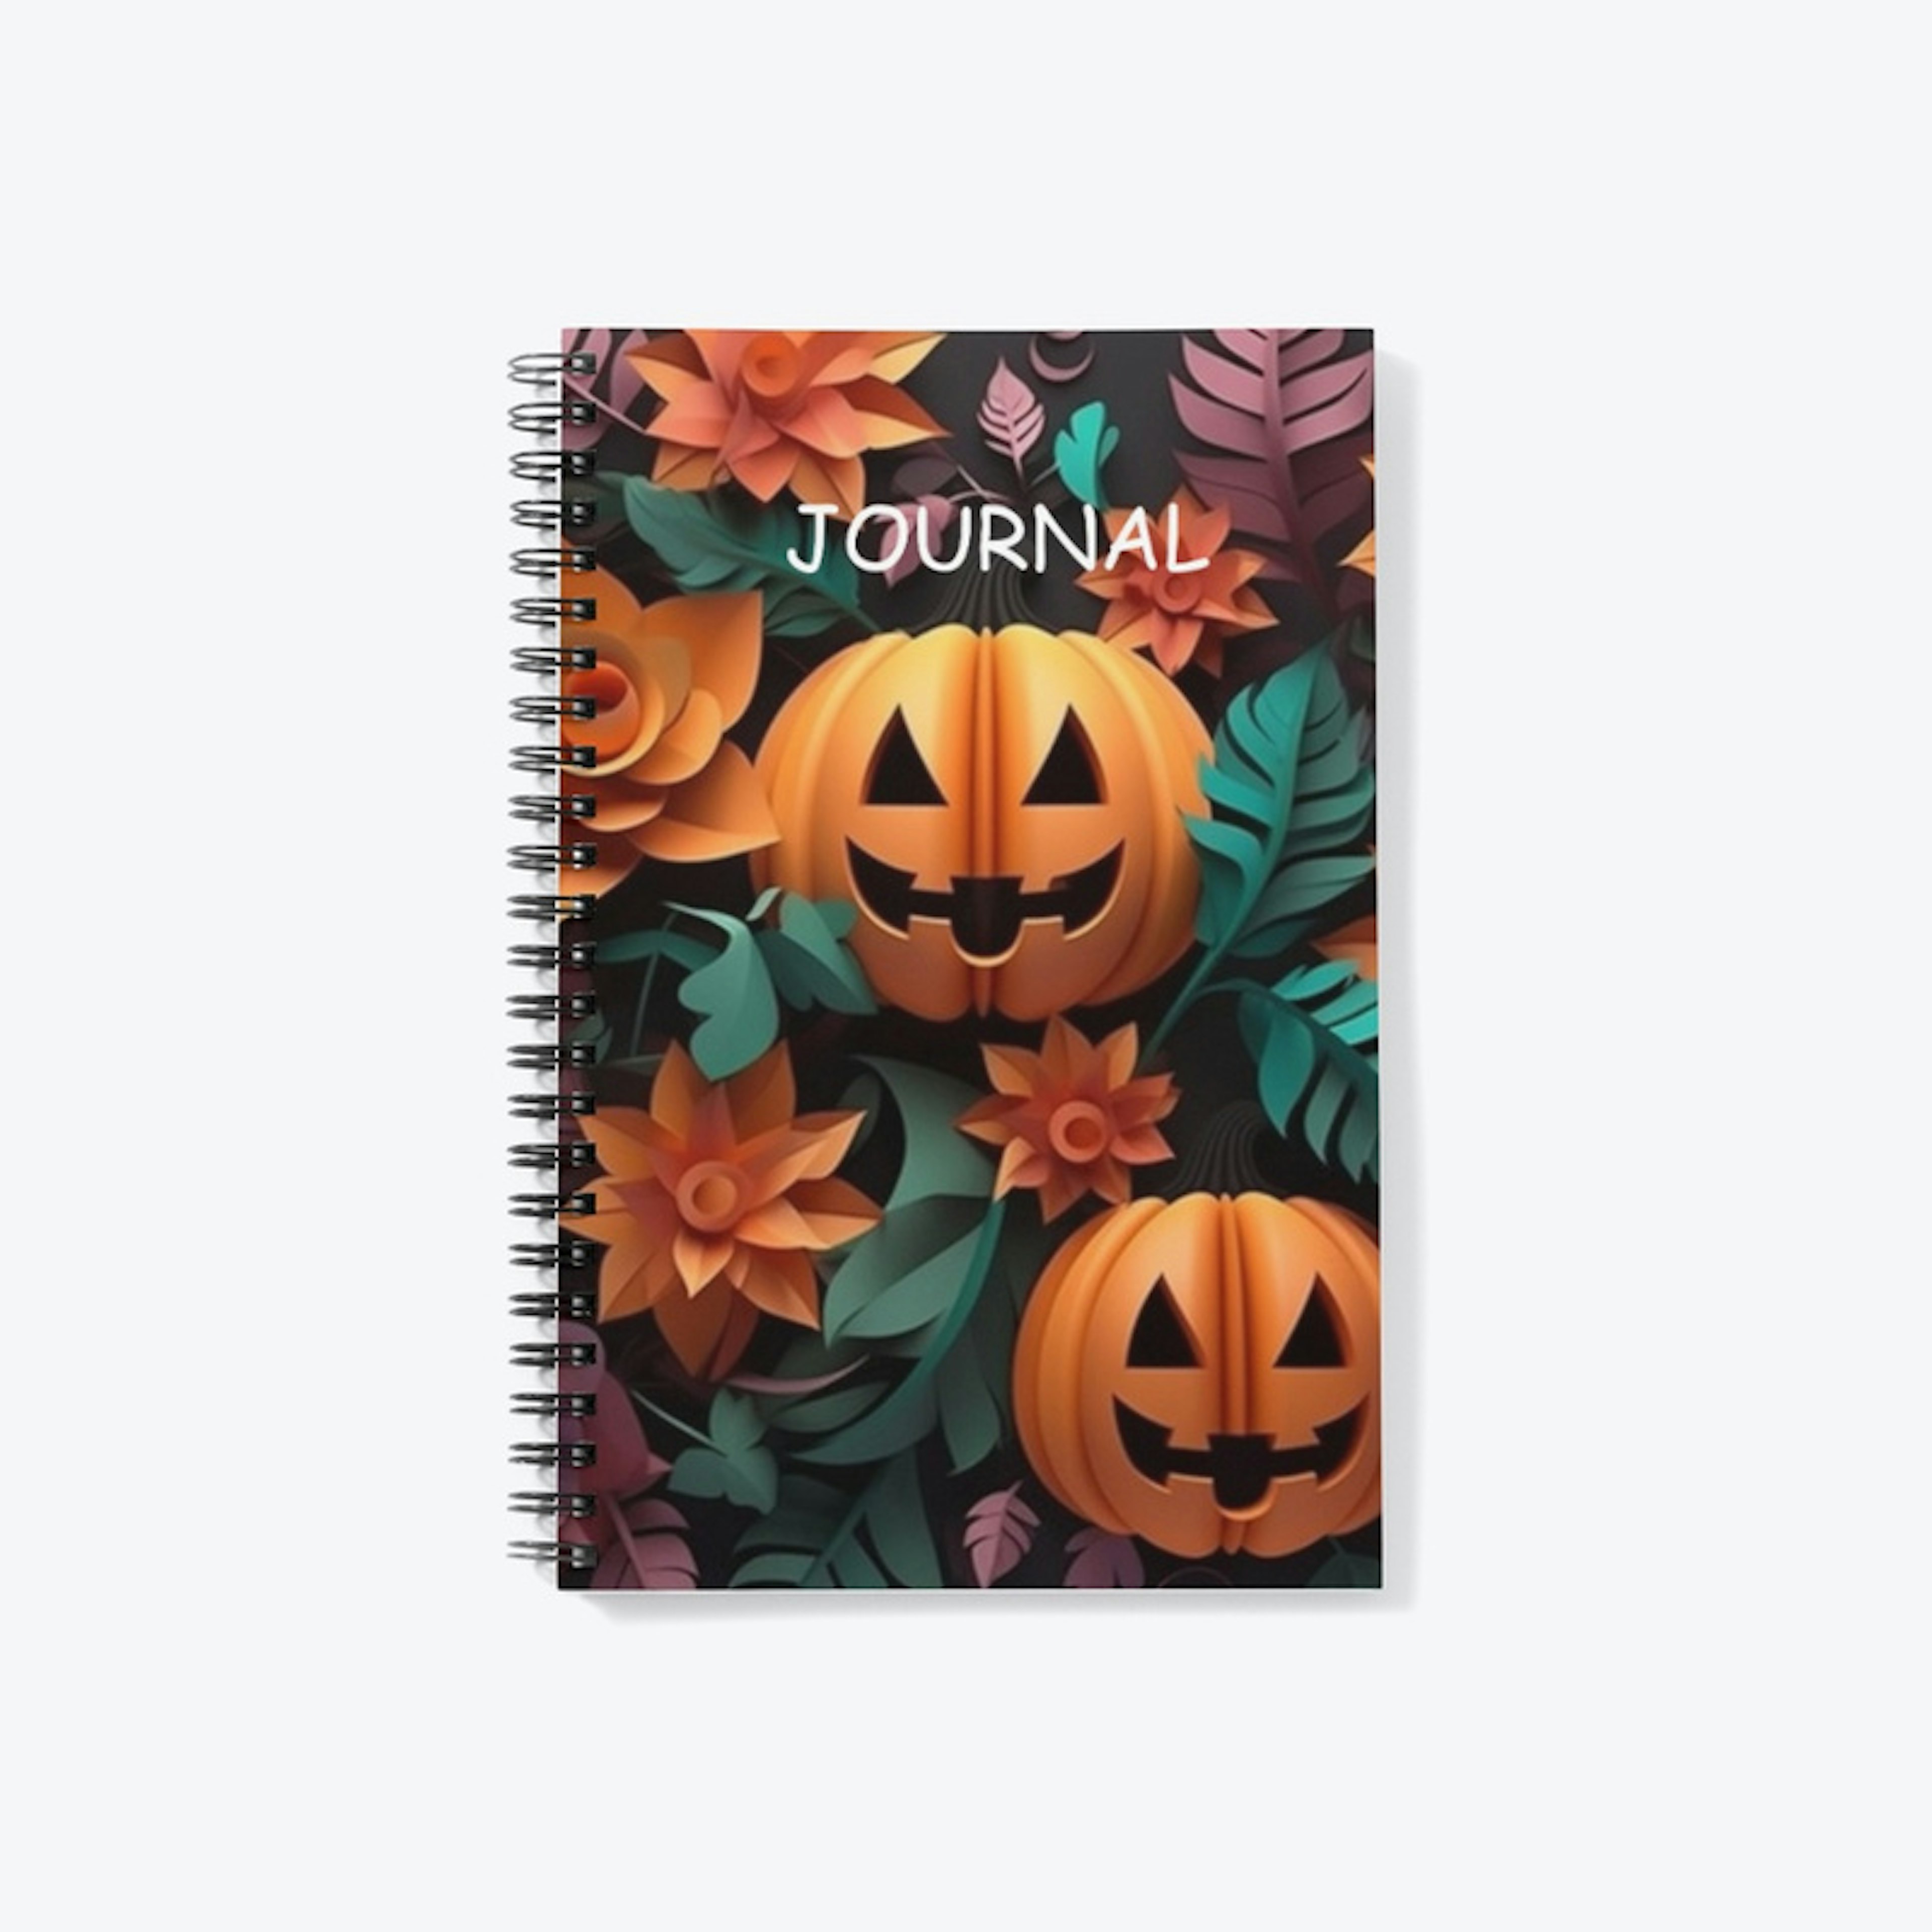 Pumpkin Journal